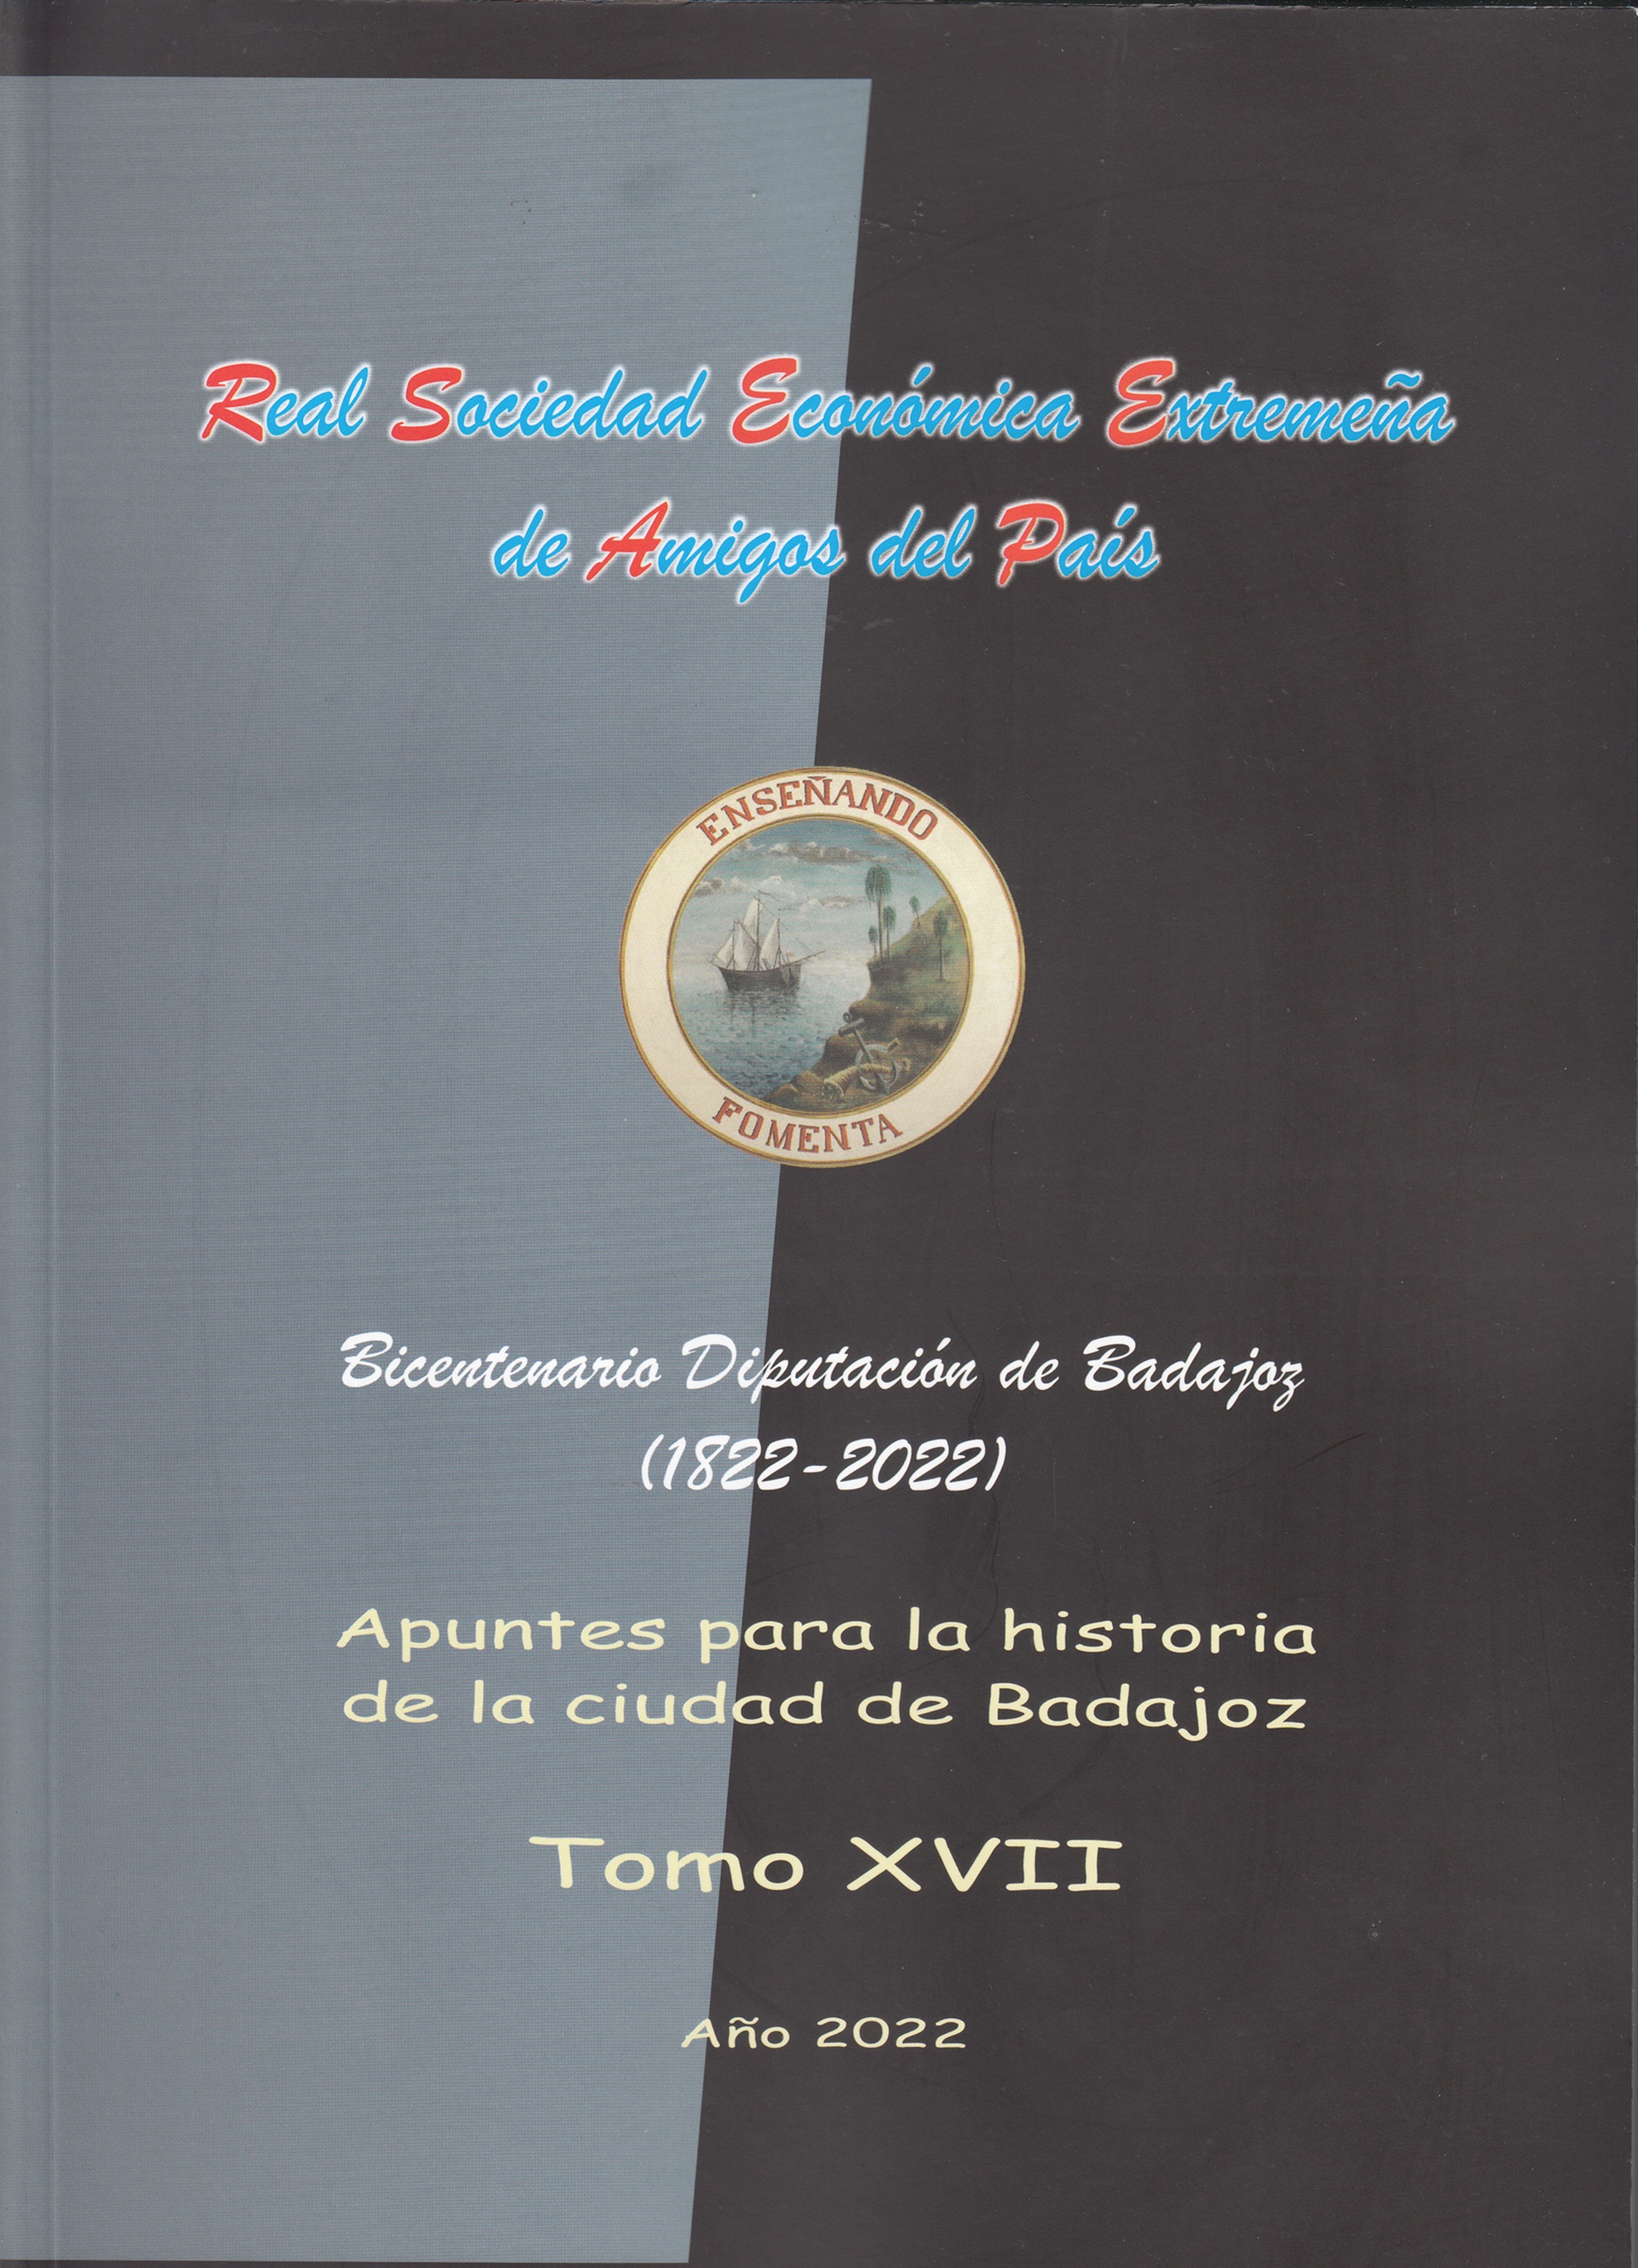 Imagen de portada del libro Apuntes para la historia de Badajoz